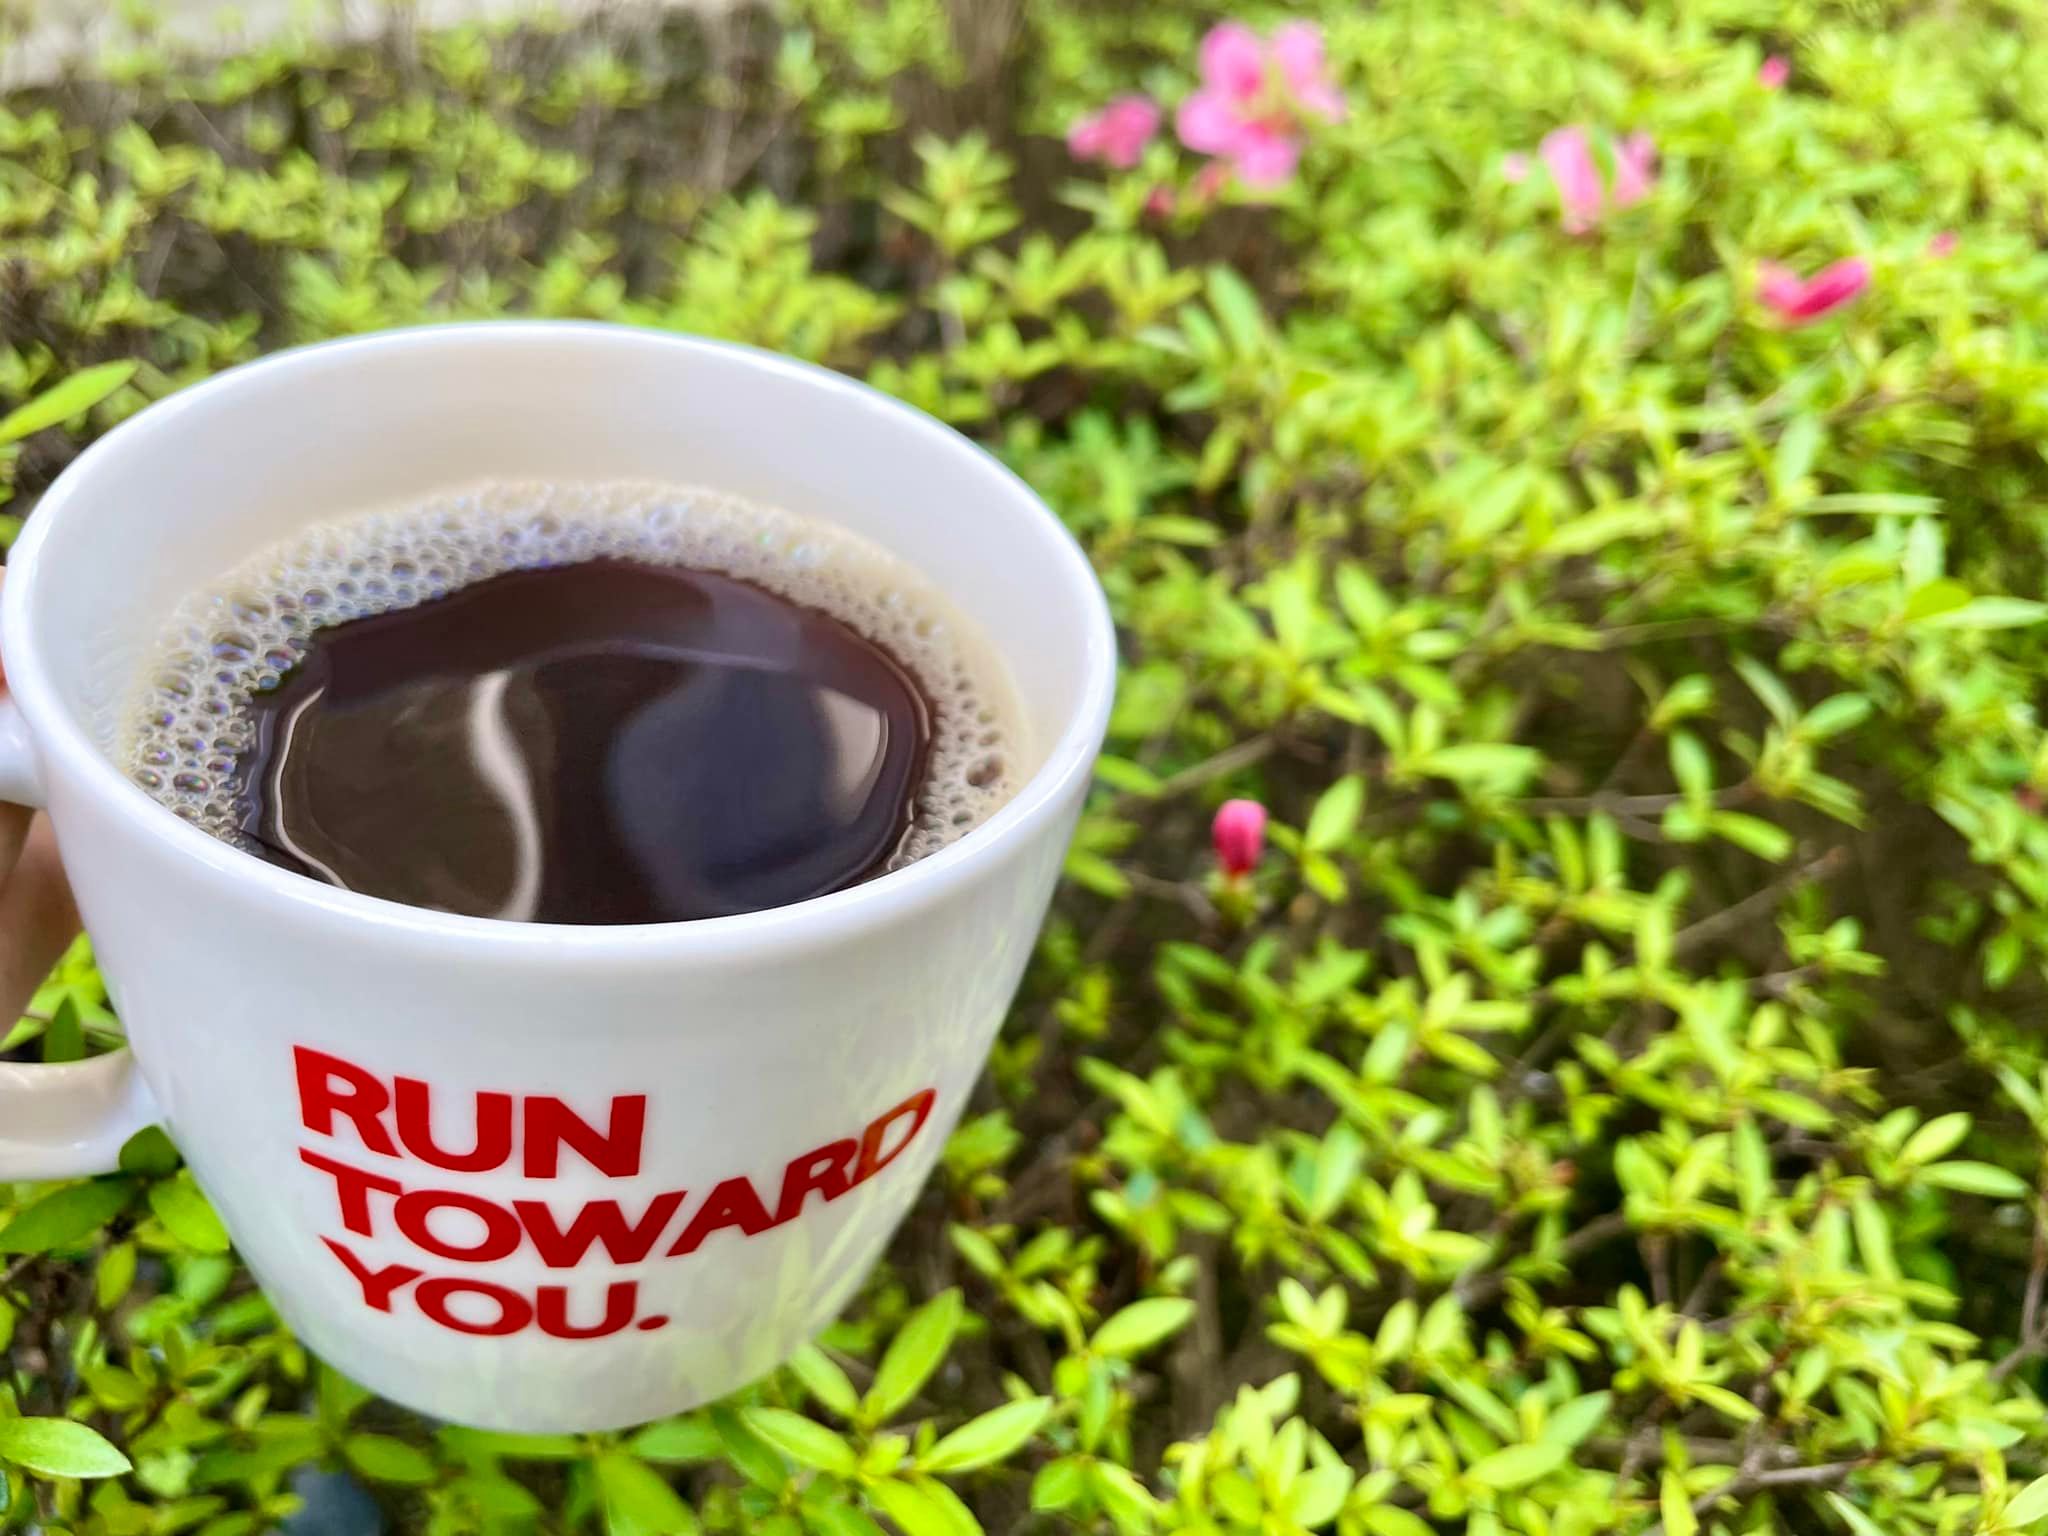 マグカップに入ったブラックコーヒーの写真。背景には咲き掛けのサツキが写っている。